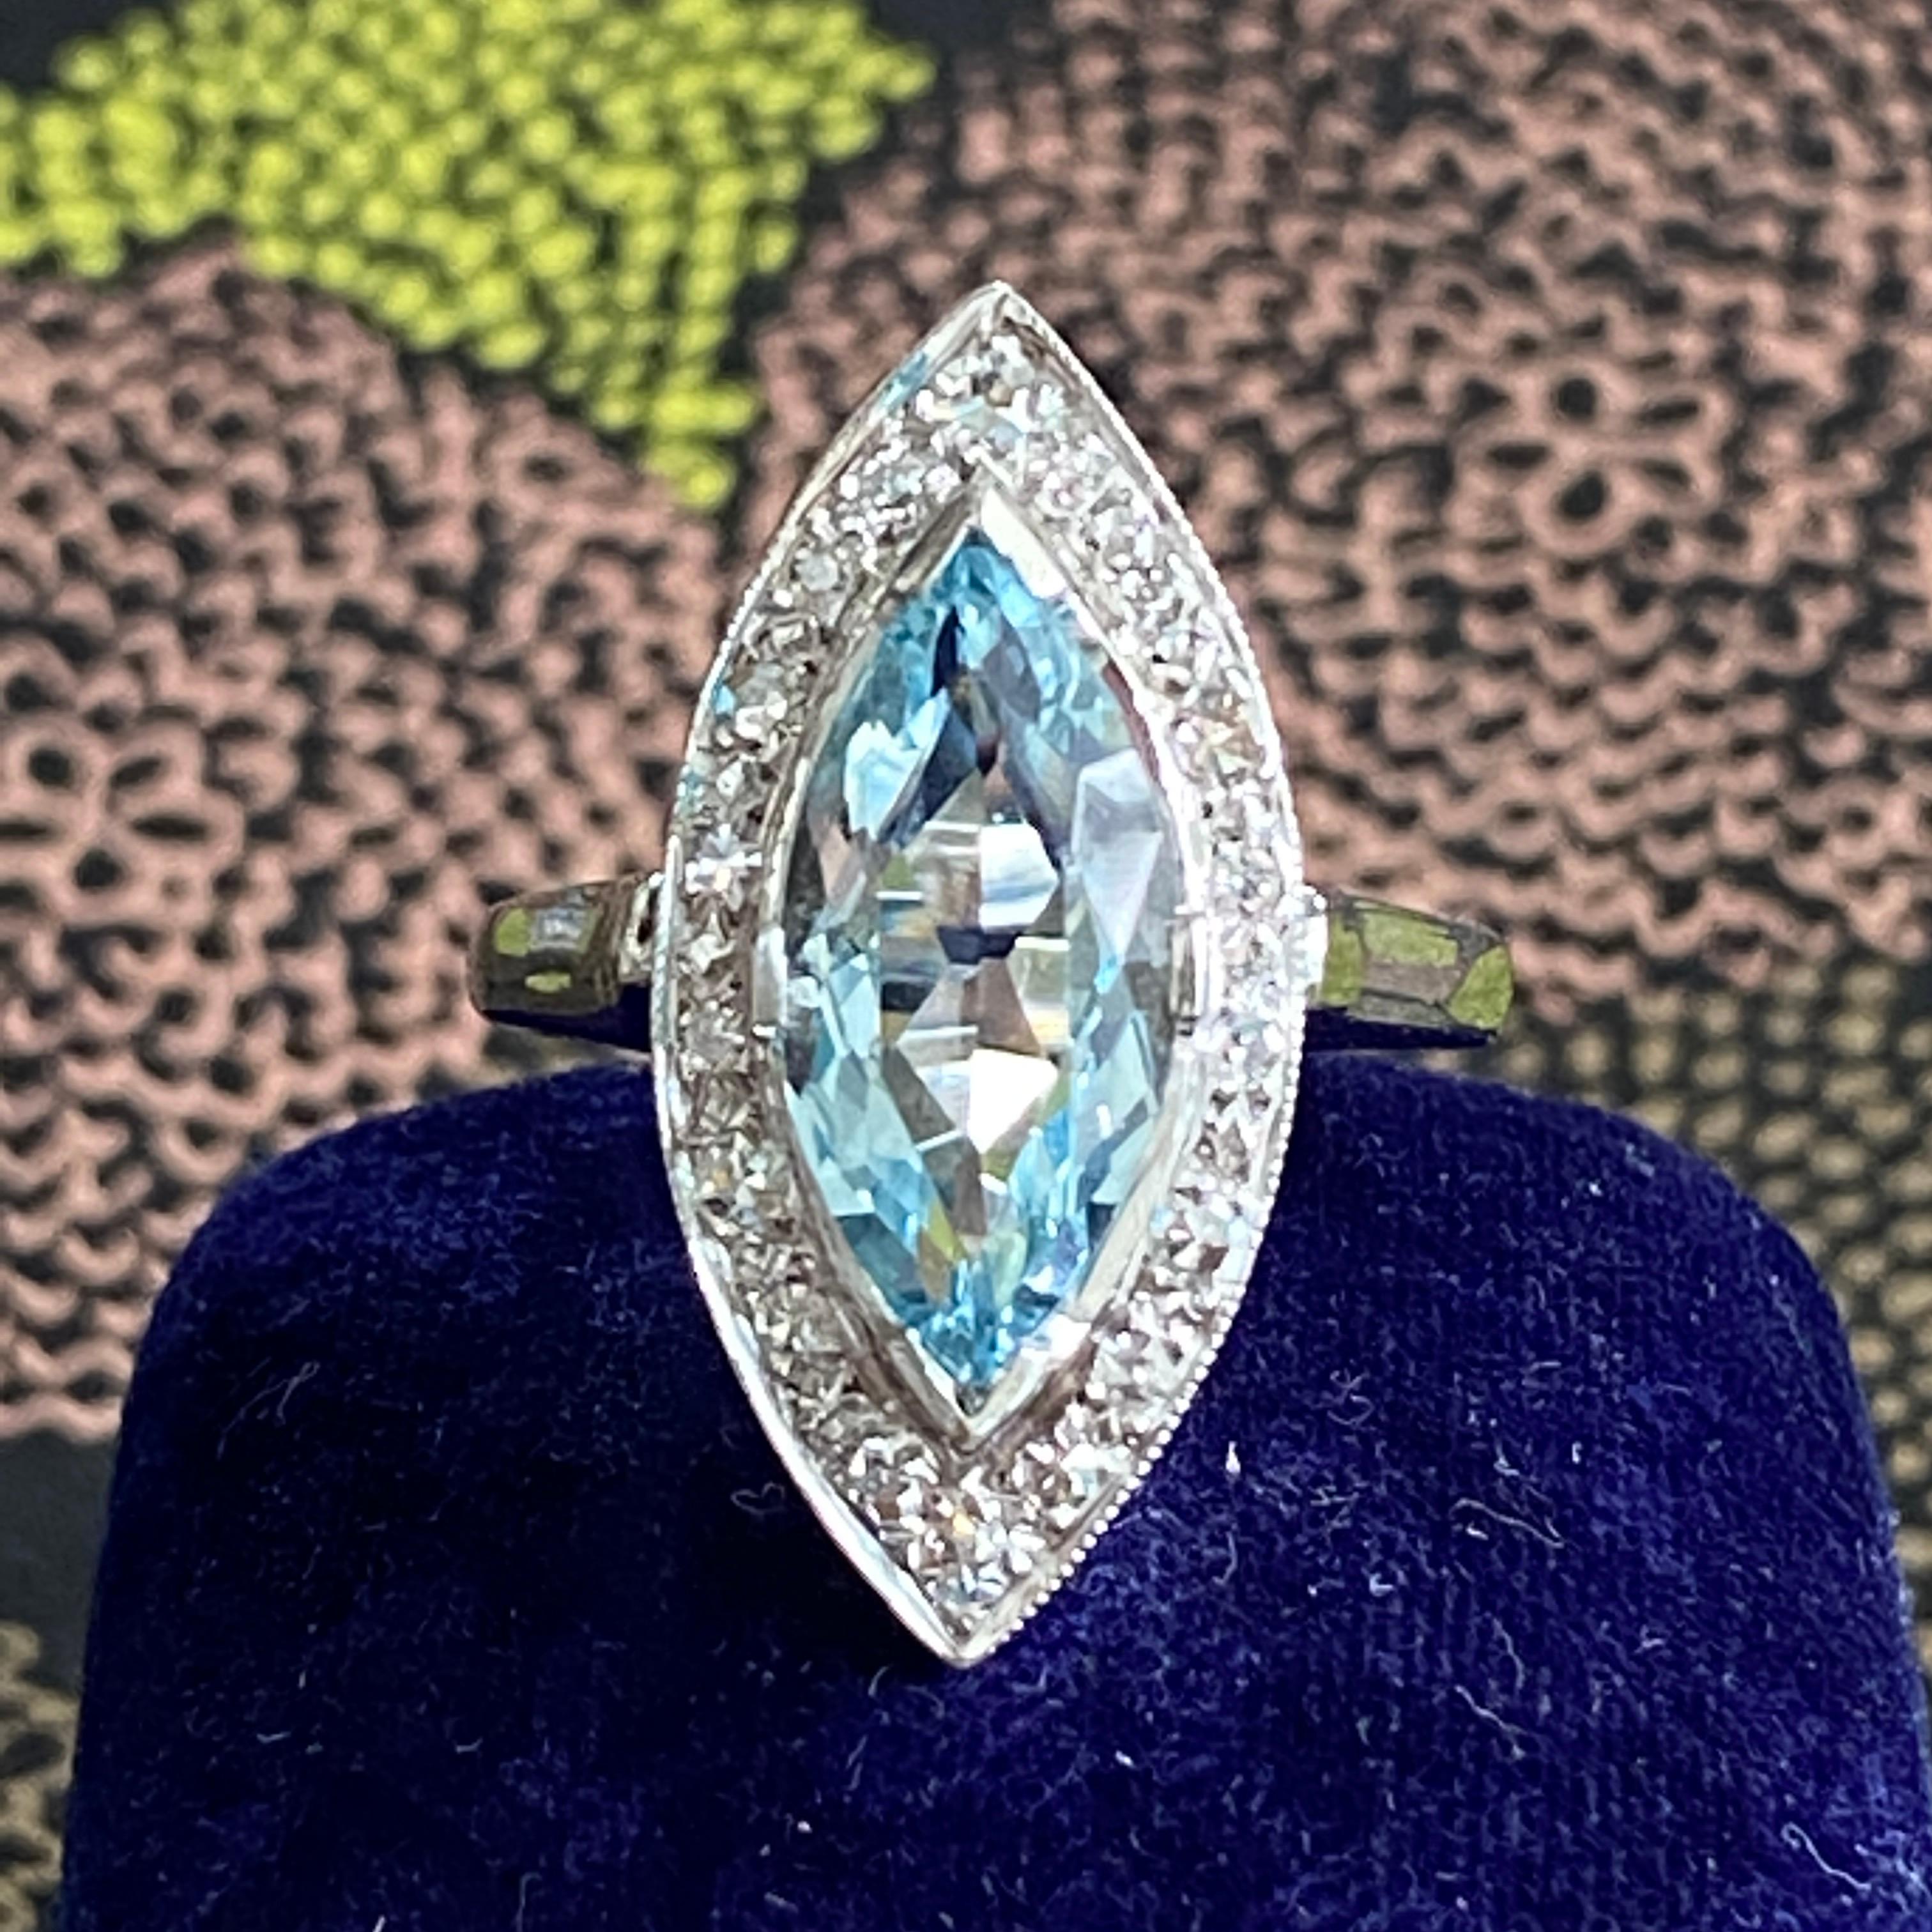 Einzelheiten:
Klassischer Vintage Marquise Aquamarin und Diamantring! Der Aquamarin im Marquise-Schliff misst 15,6 mm x 7,6 mm (ca. 2,5 Karat), und die 19 Diamanten messen 1,75 bis 2,25 mm. Der Aquamarin hat eine helle, klassisch schöne blaue Farbe.